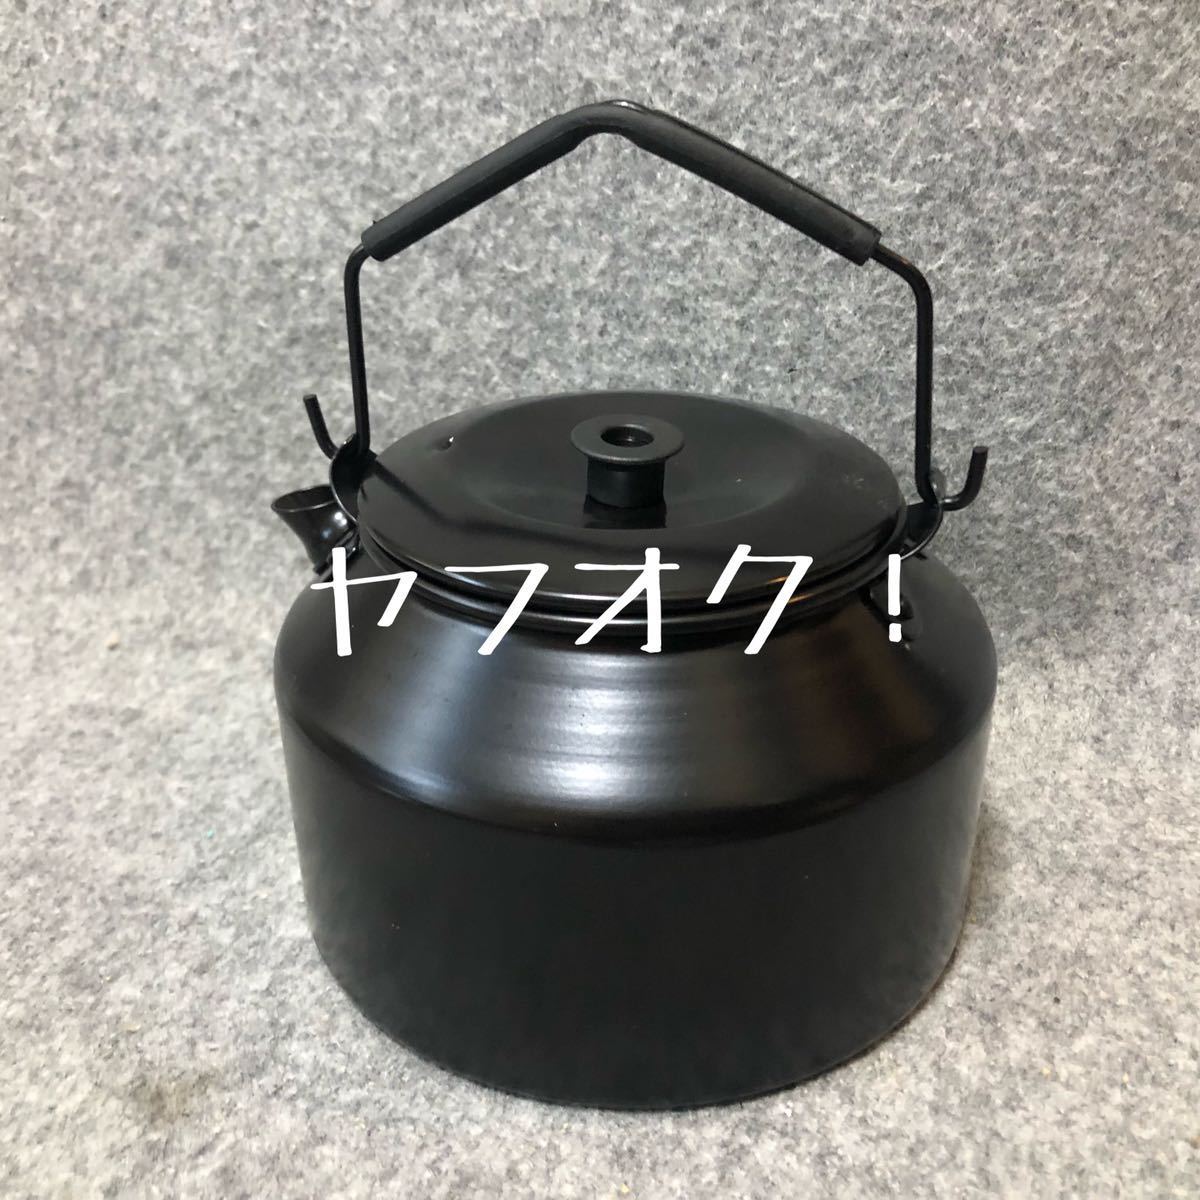 トランギア ケトル 1.4L TR-245 Black trangia kettle TR-245 1.4L